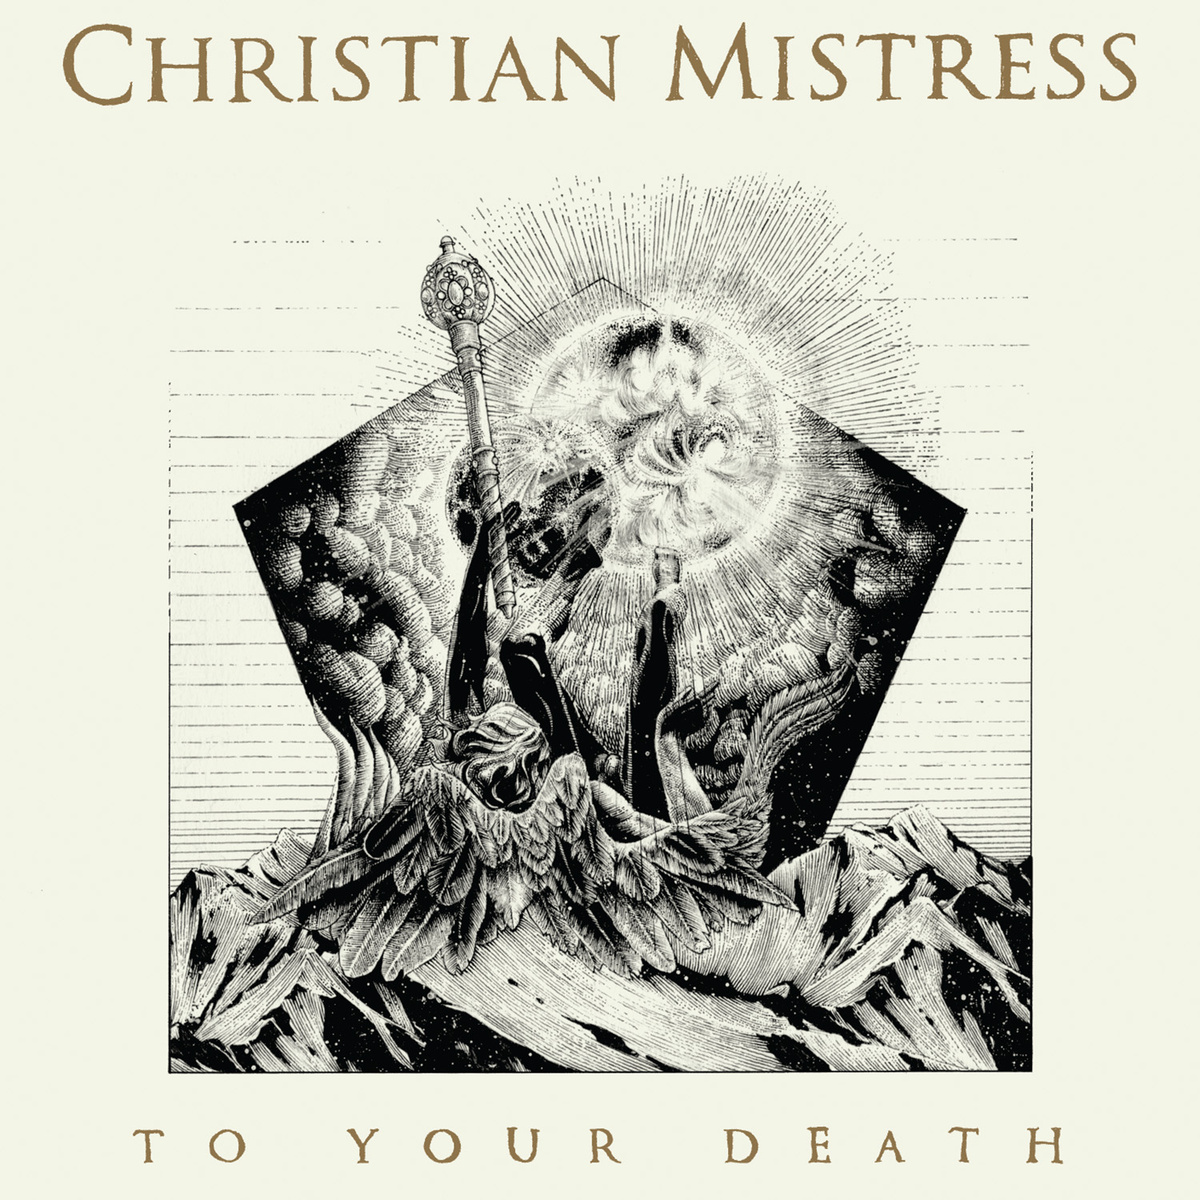 CHRISTIAN MISTRESS: titulo, portada, tracklist, fecha de lanzamiento y primer adelanto para su nuevo disco